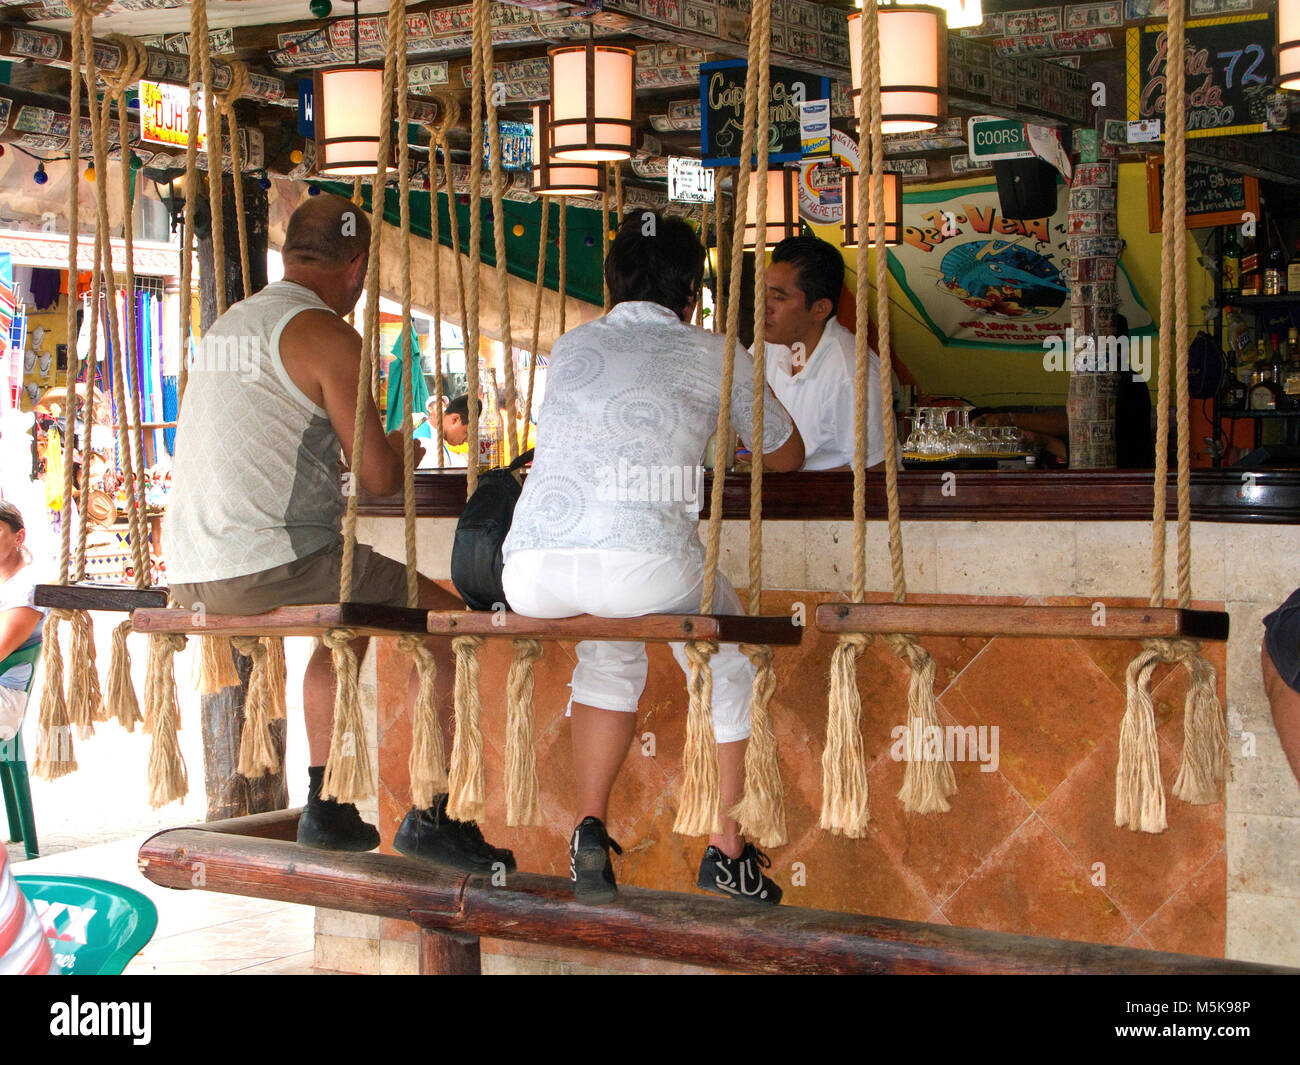 Los turistas en el mostrador de un bar en la playa, la playa de Playa del Carmen, México, el Caribe Foto de stock